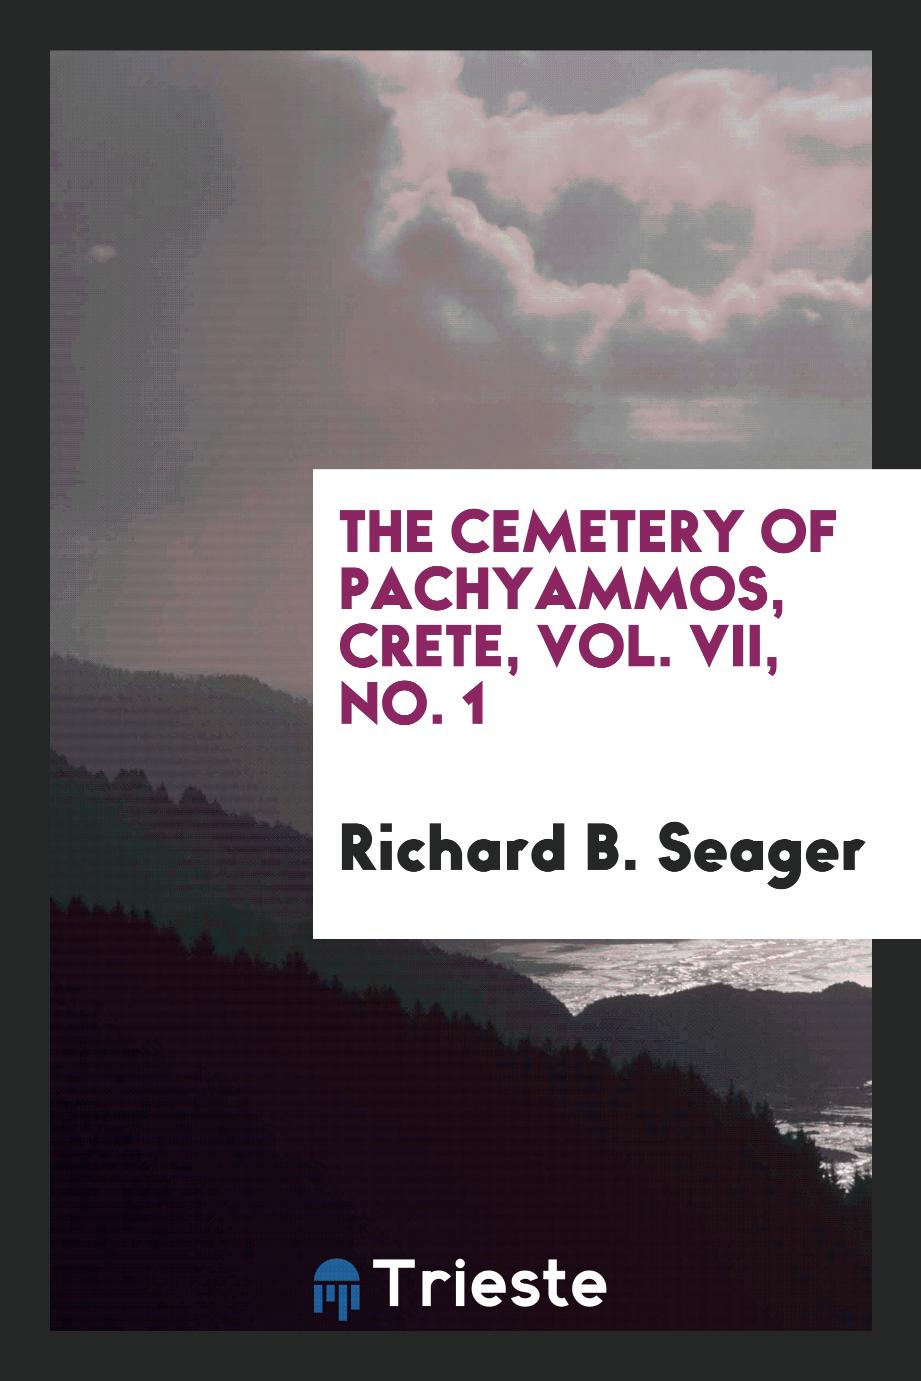 The cemetery of Pachyammos, Crete, Vol. VII, No. 1